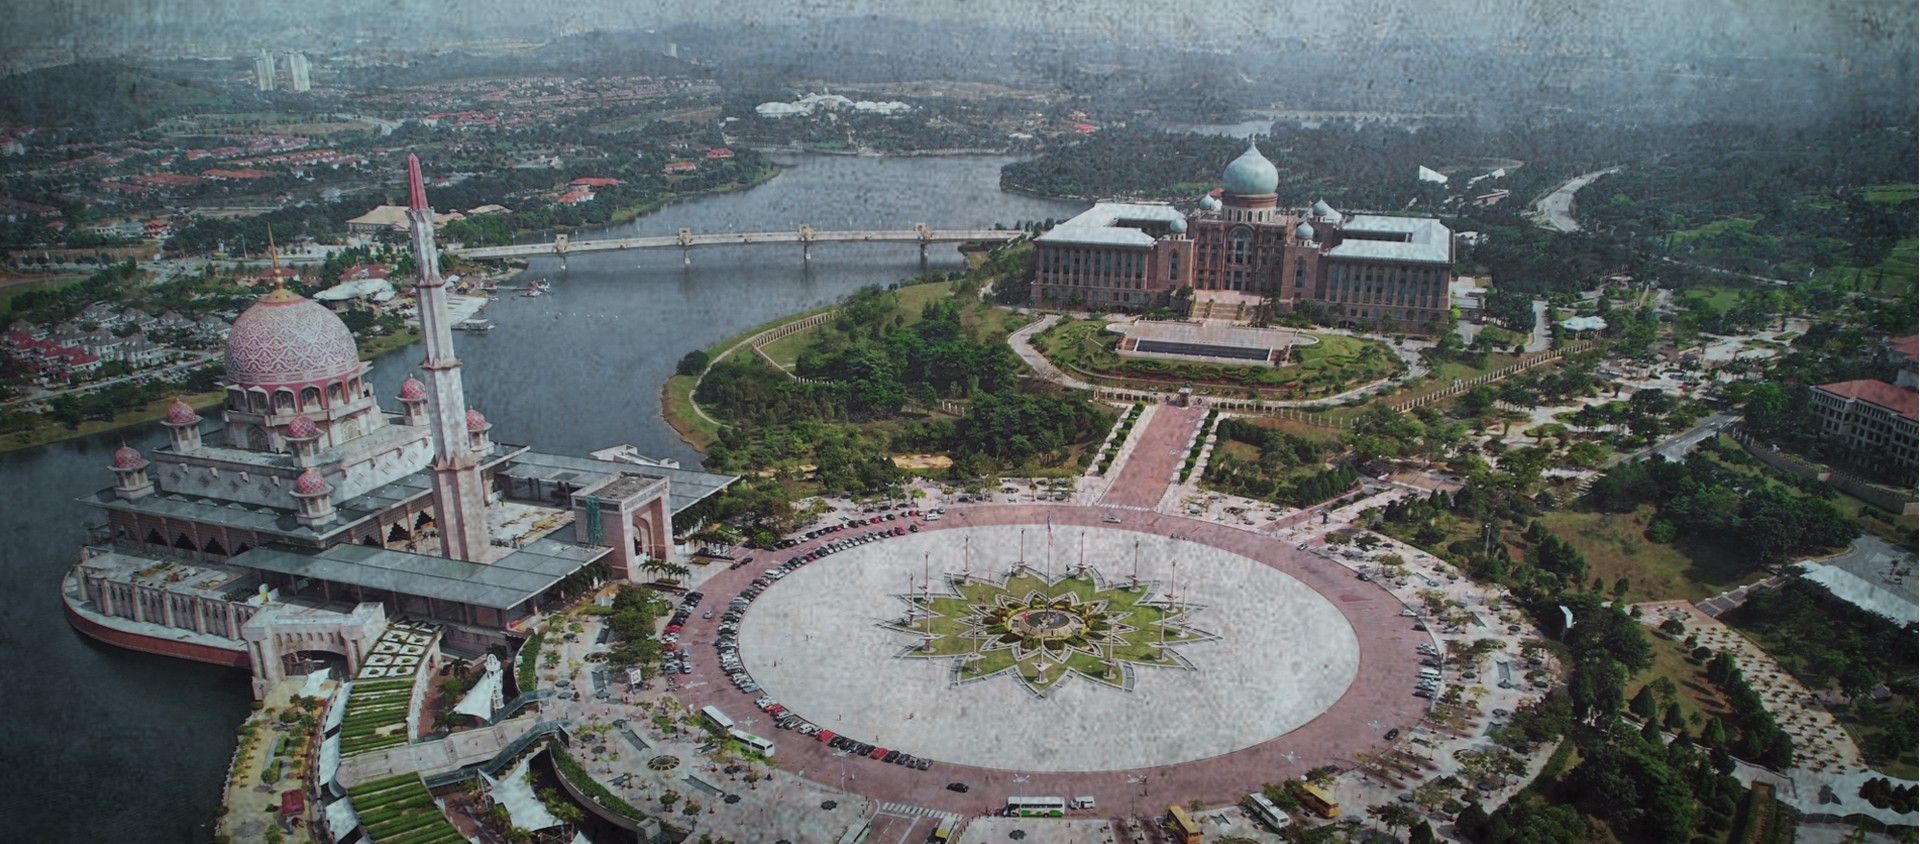 Khu đô thị mới Putrajaya - dấu ấn của Thủ tướng Mahathir - Ảnh 8.